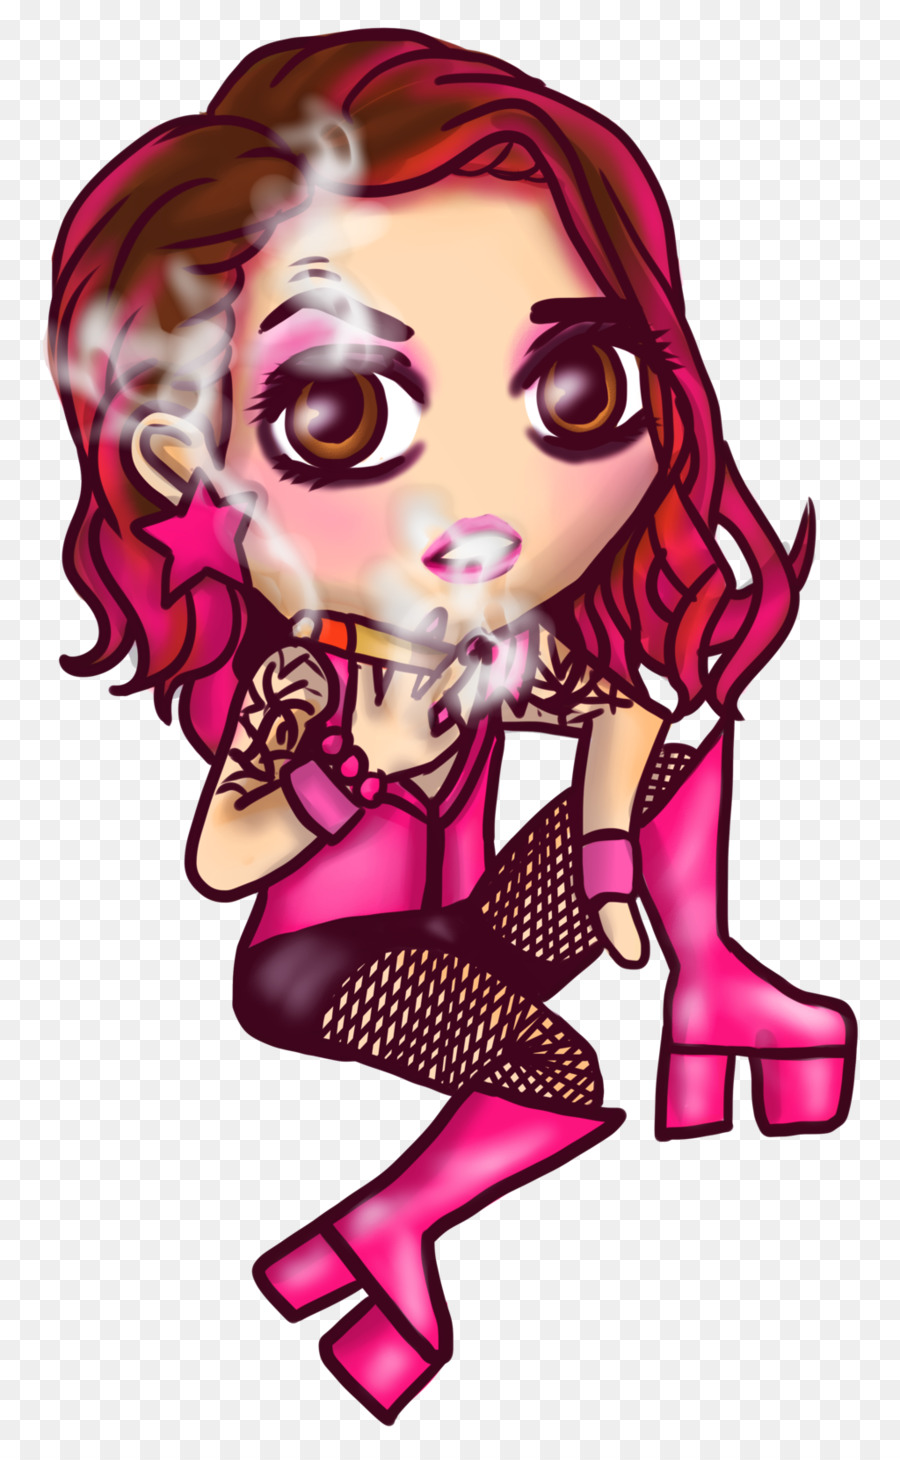 Cartoon Clip art - pink singer